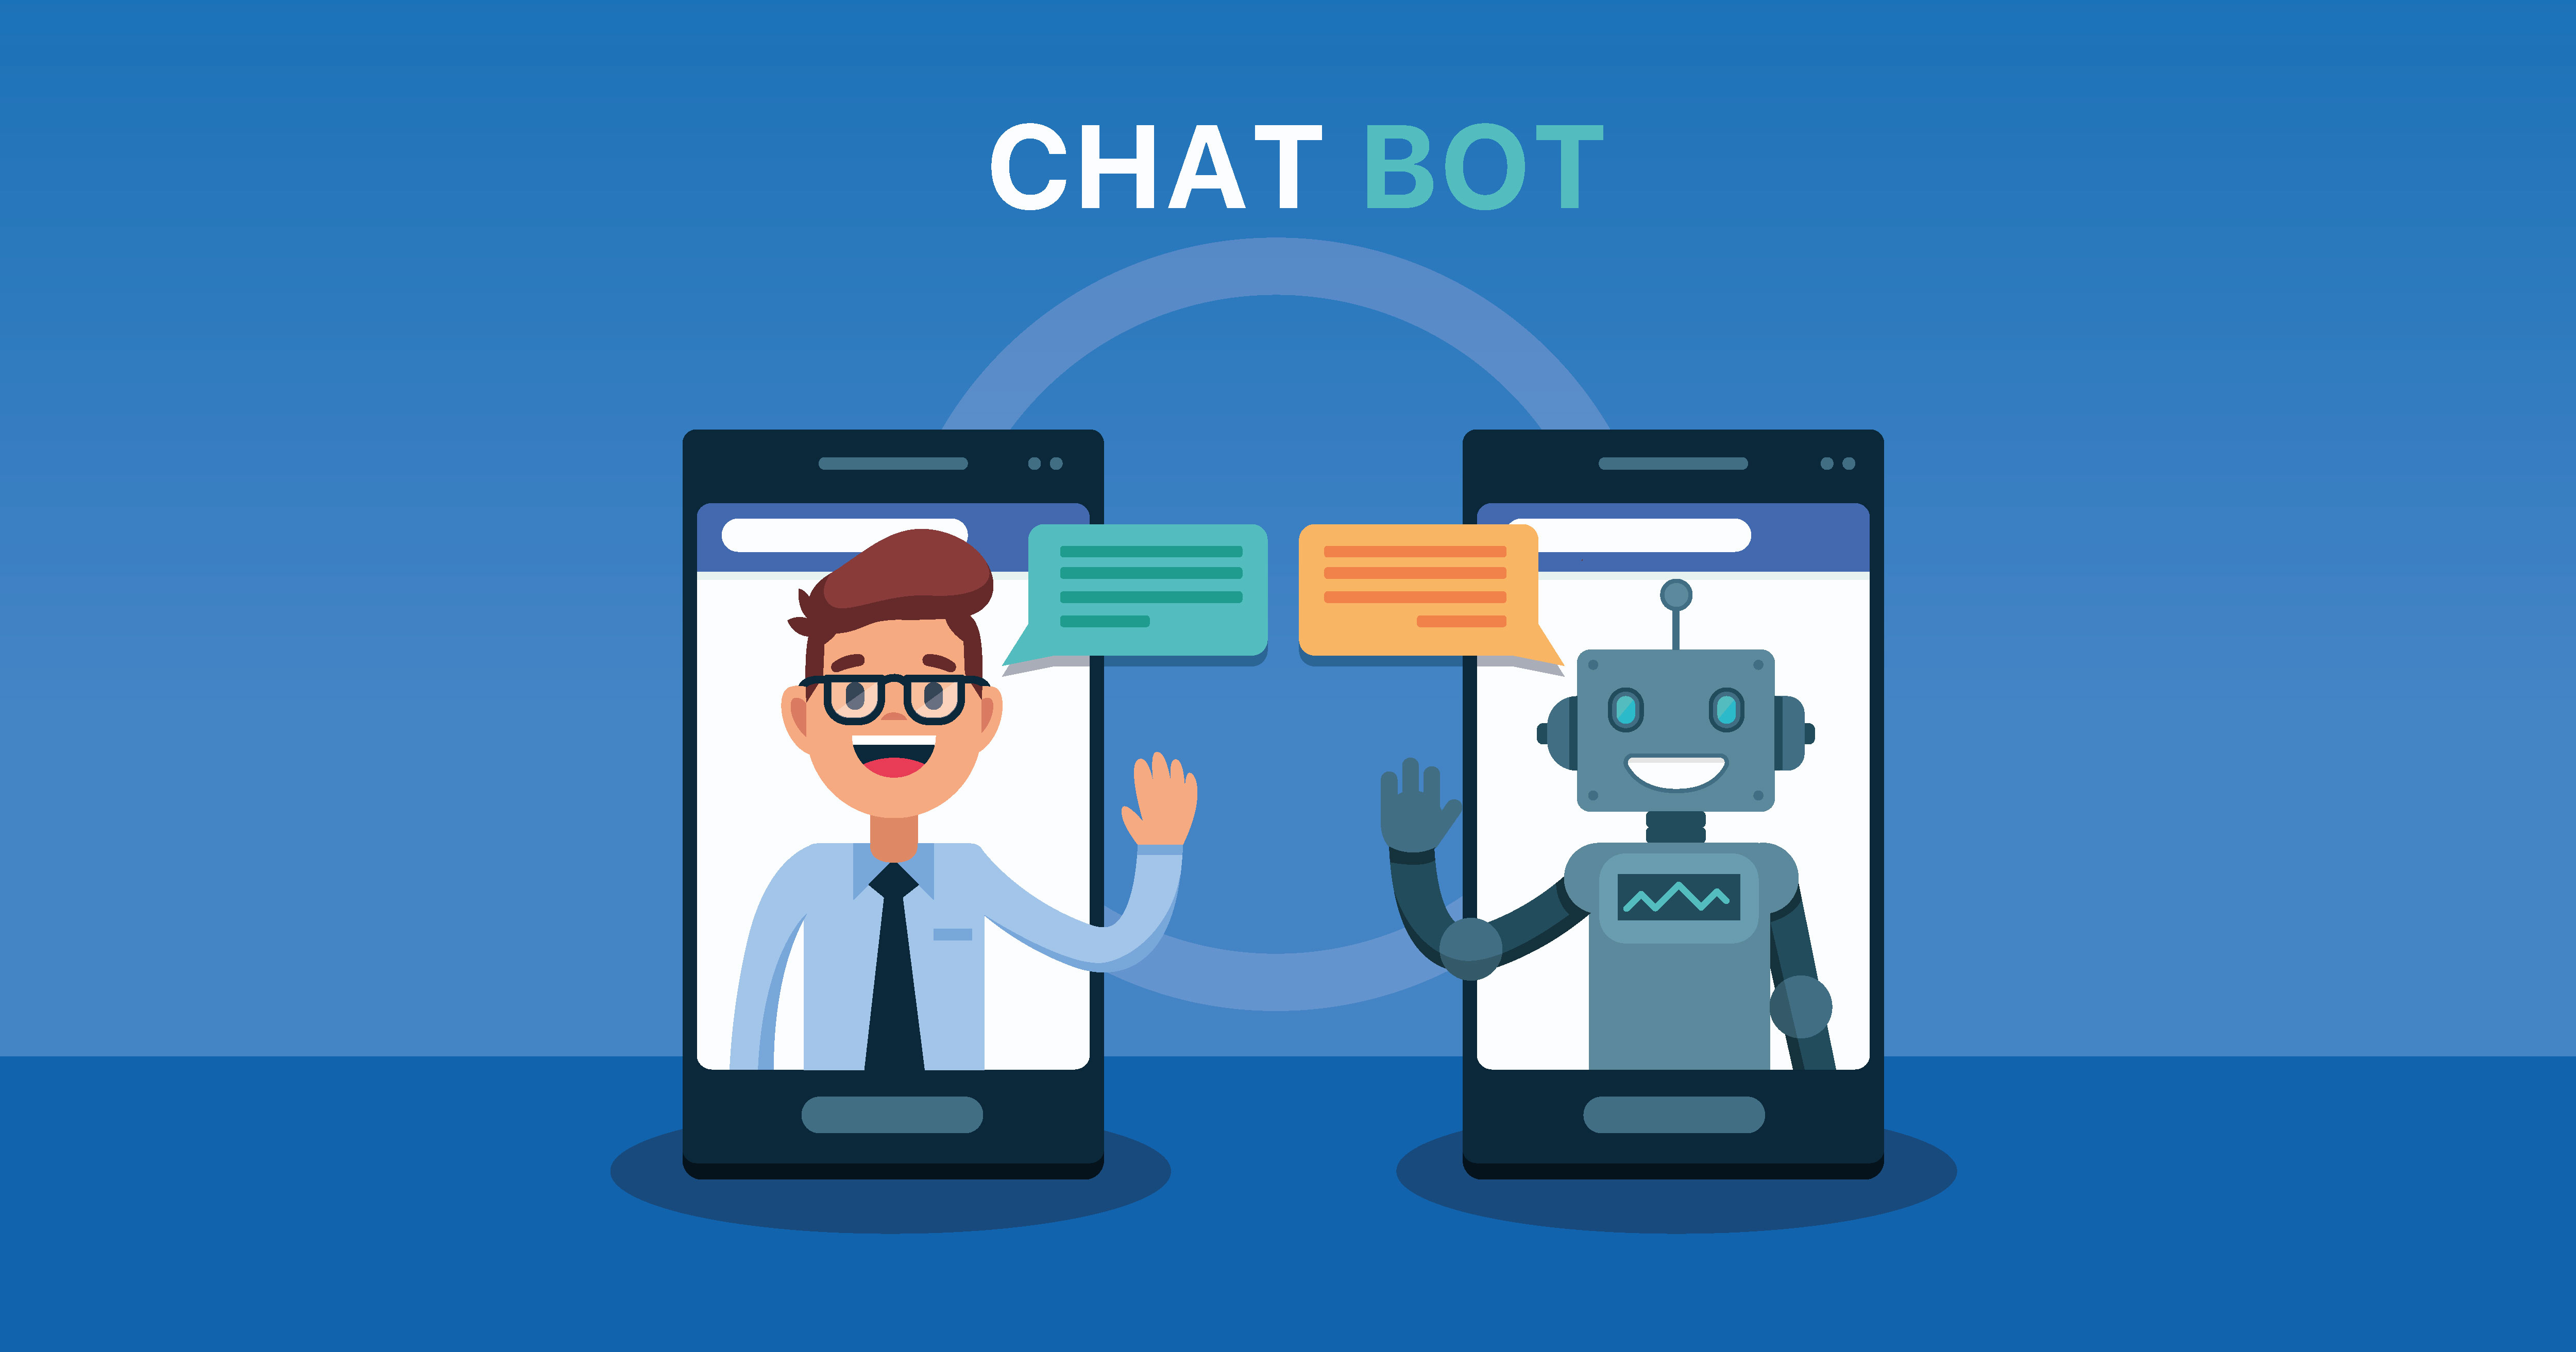 chatbot communication